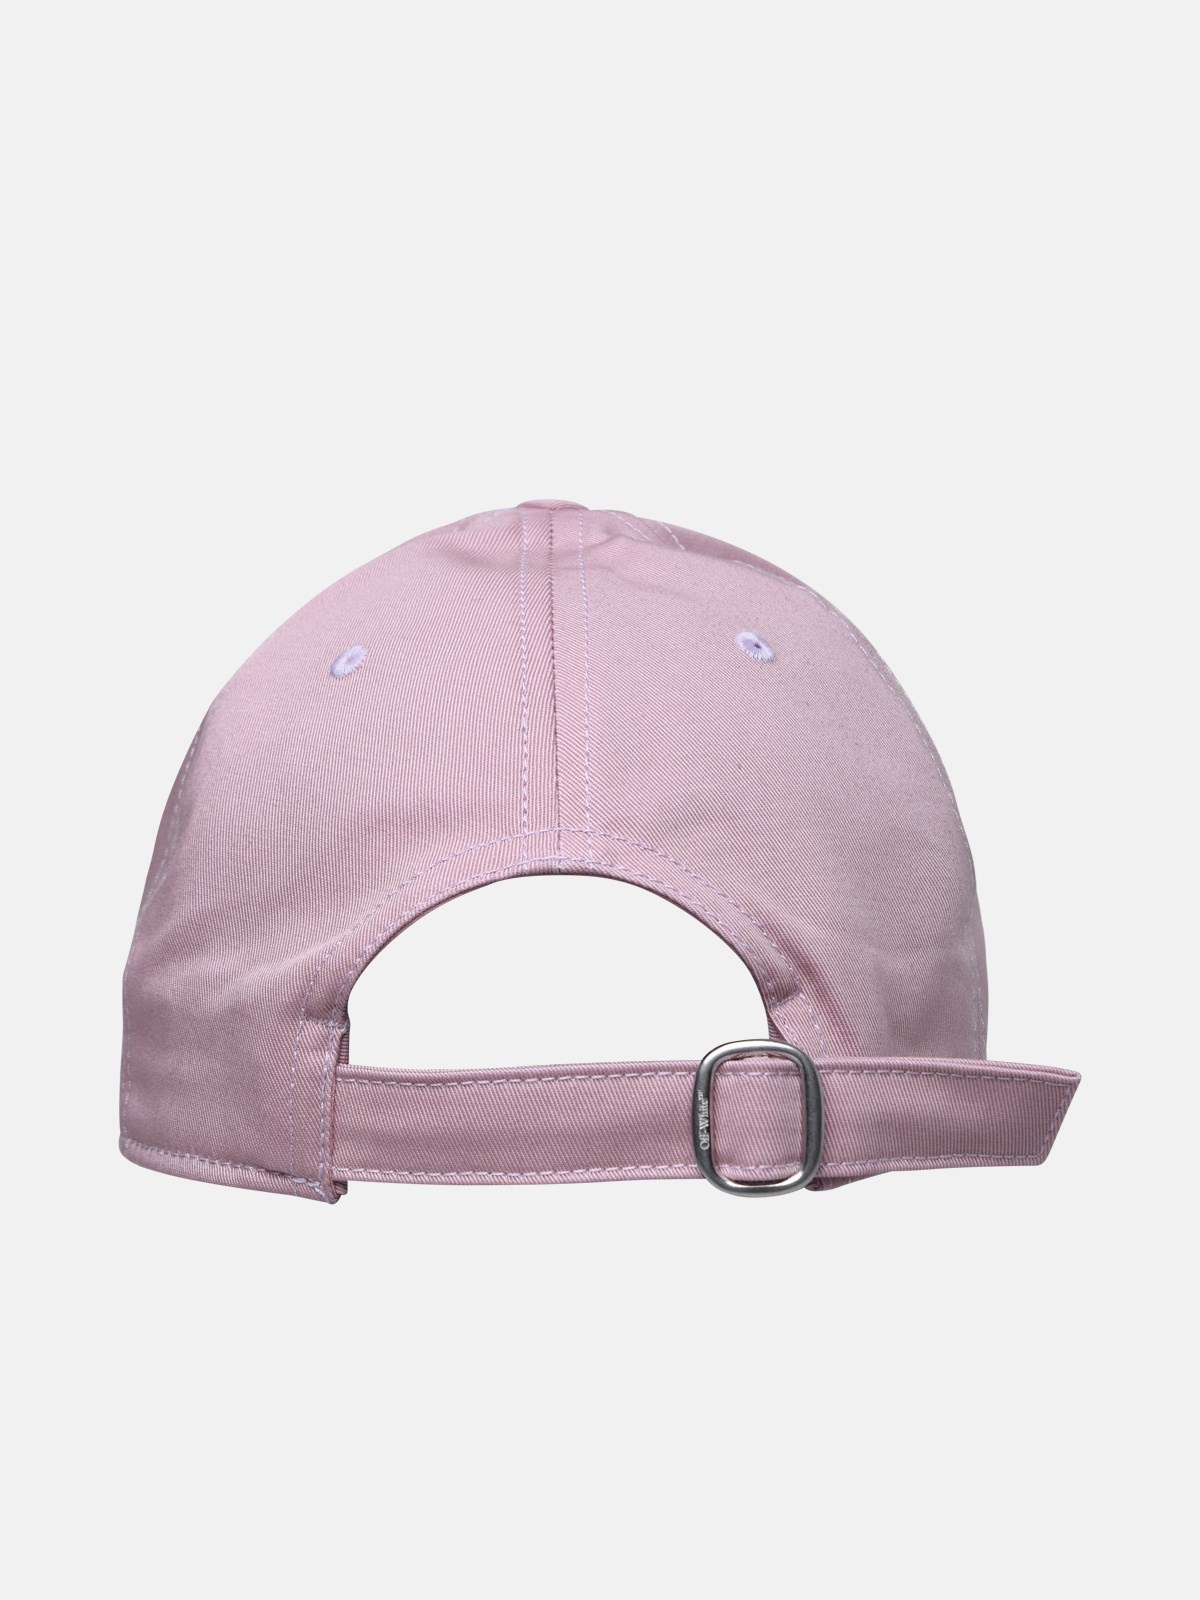 PINK COTTON HAT - 3